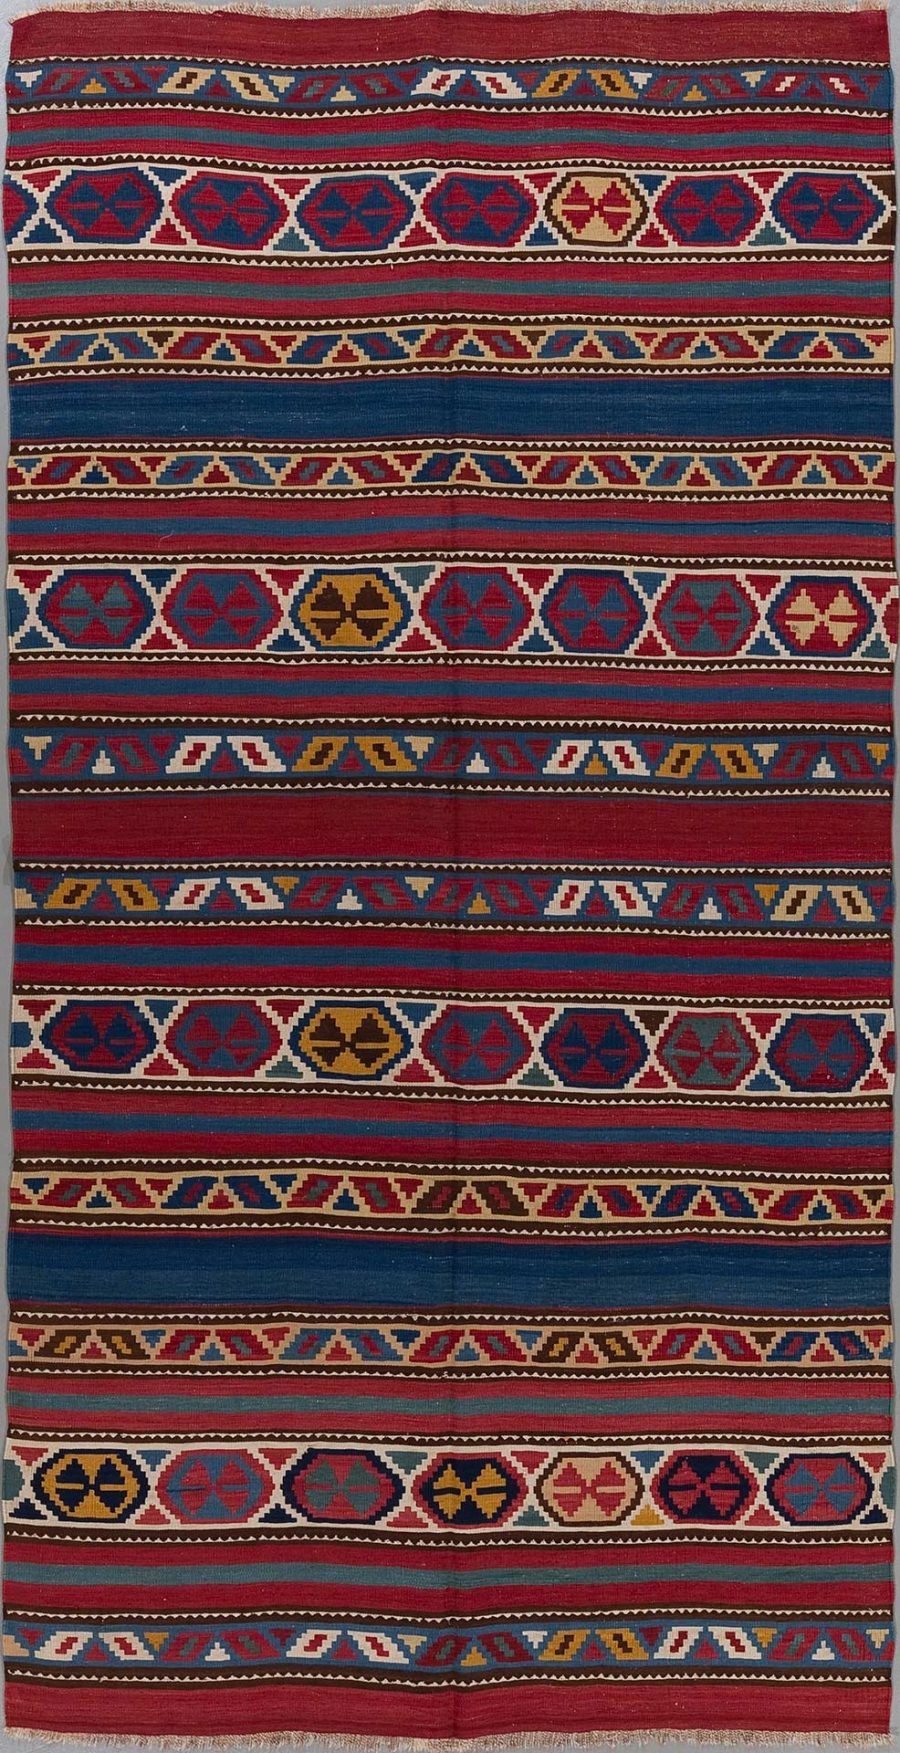 Traditioneller handgewebter Teppich mit vielfarbigen, horizontalen Streifen und geometrischen Mustern in Rot-, Blau-, Gelb-, Weiß- und Schwarztönen.